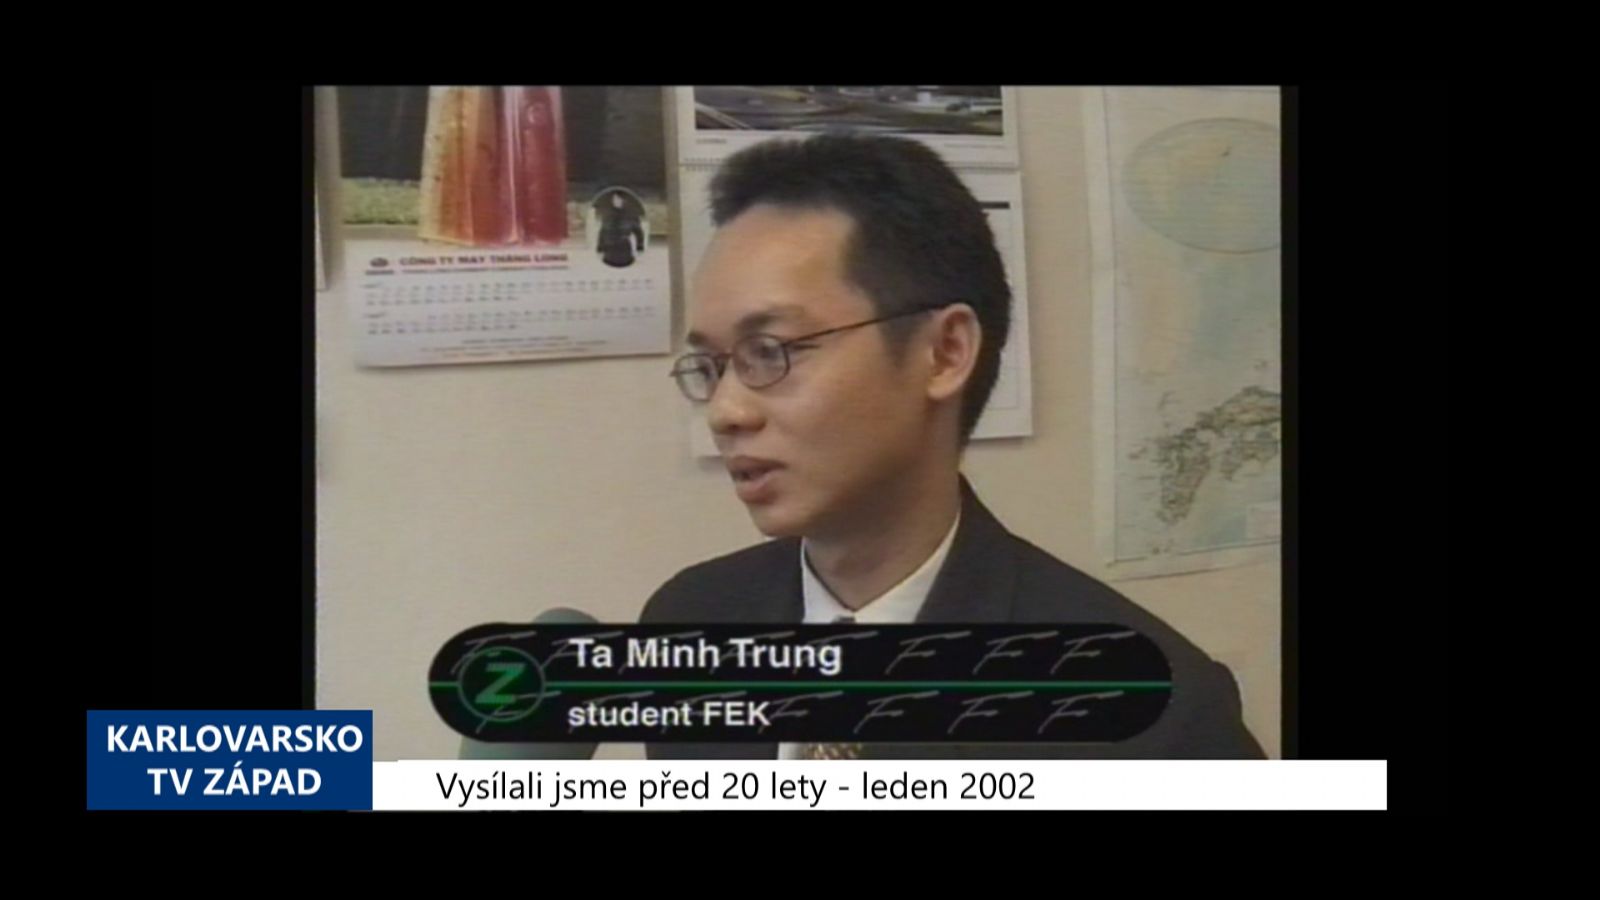 2002 – Cheb: Výzkum mezi Vietnamci přinesl řadu překvapení (TV Západ)